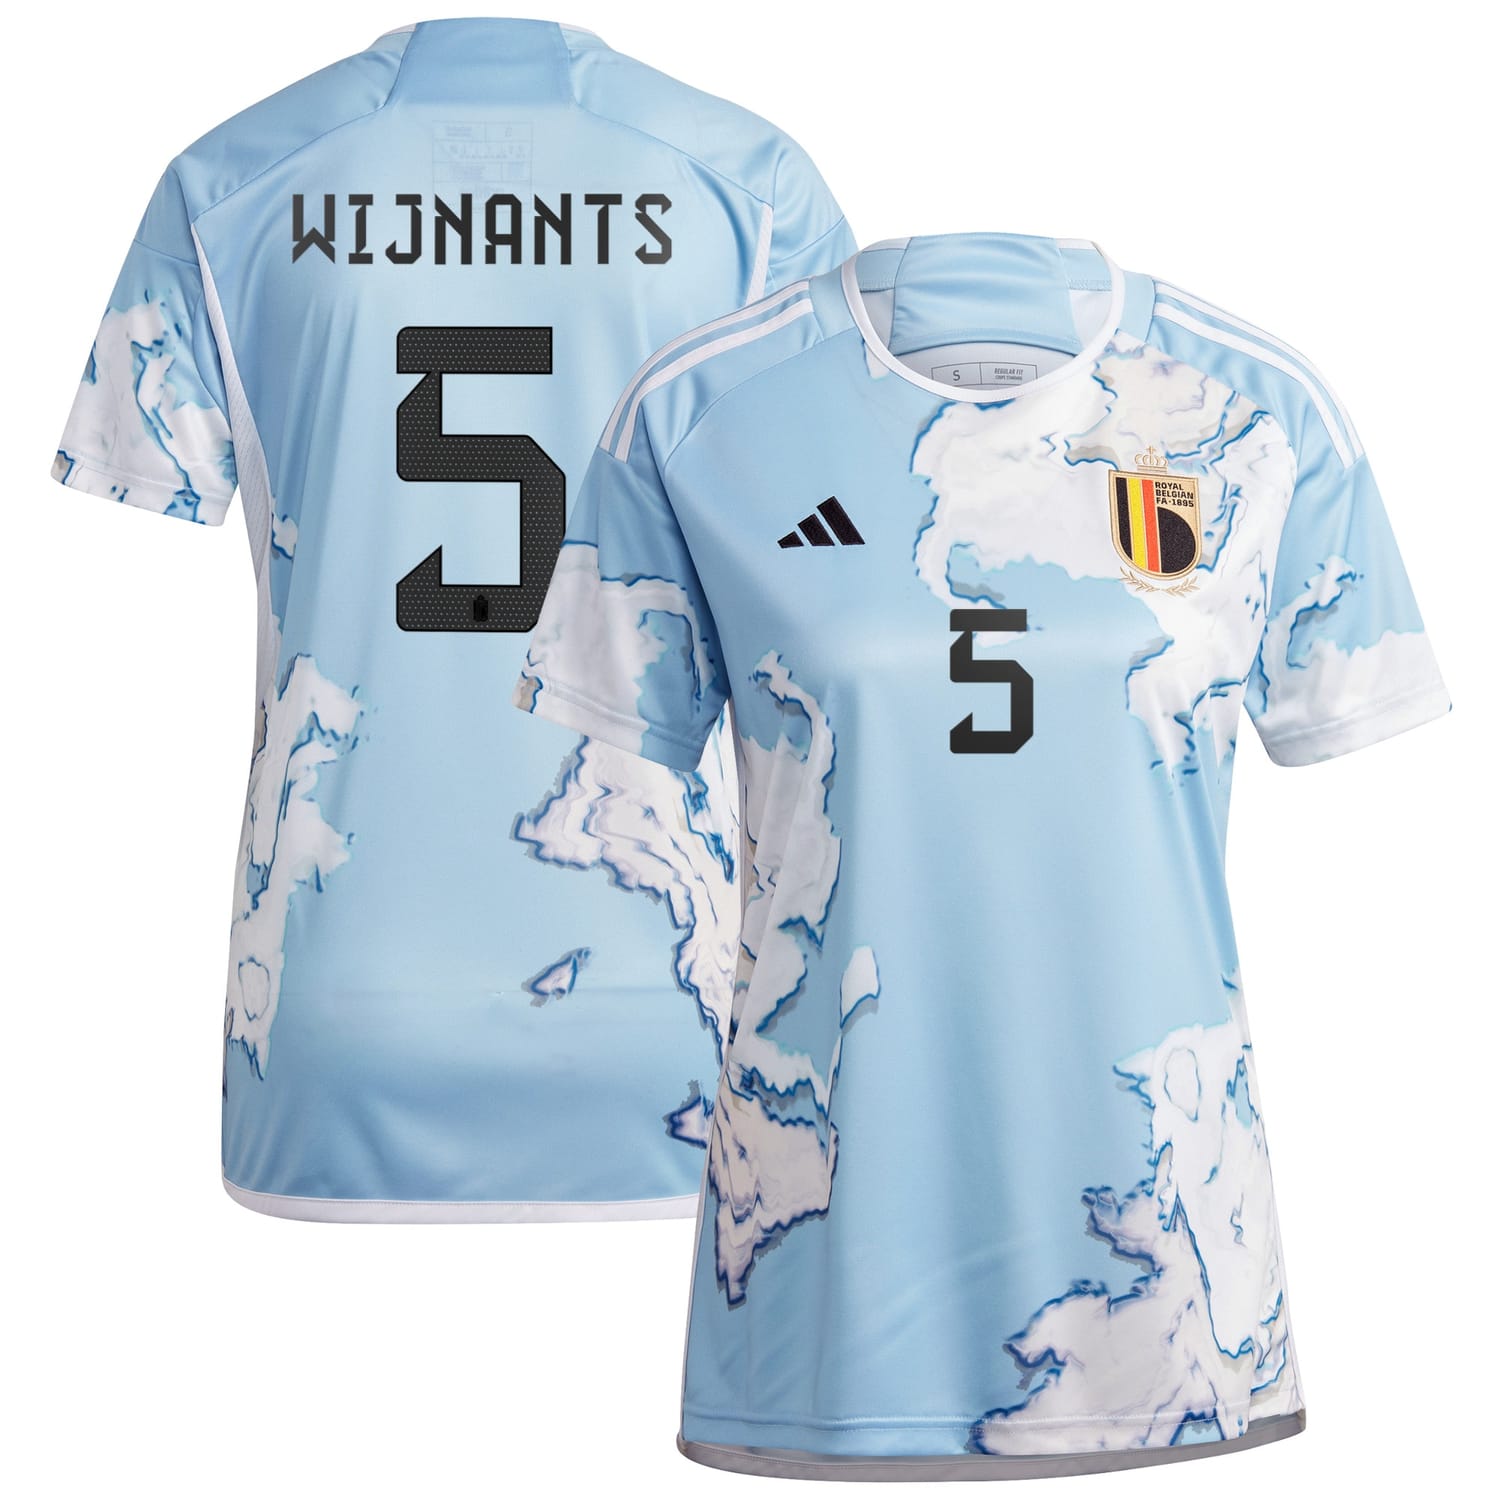 Belgium National Team Away Jersey Shirt 2023 player Sarah Wijnants 5 printing for Women